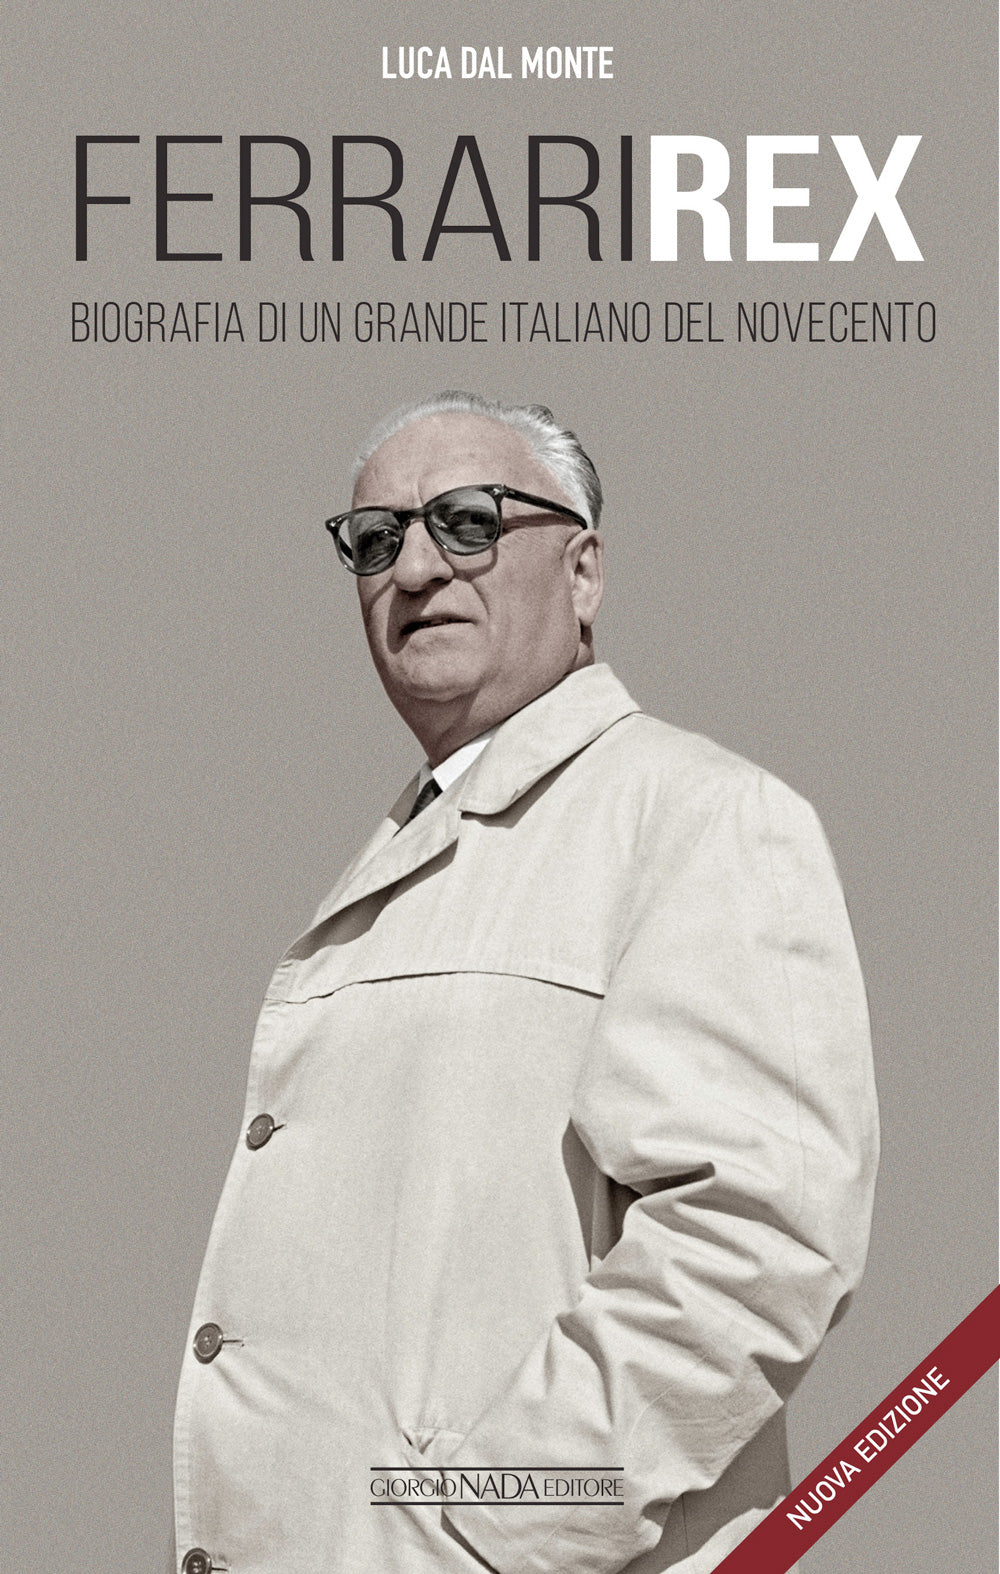 FERRARI REX. Biografia di un grande italiano del Novecento